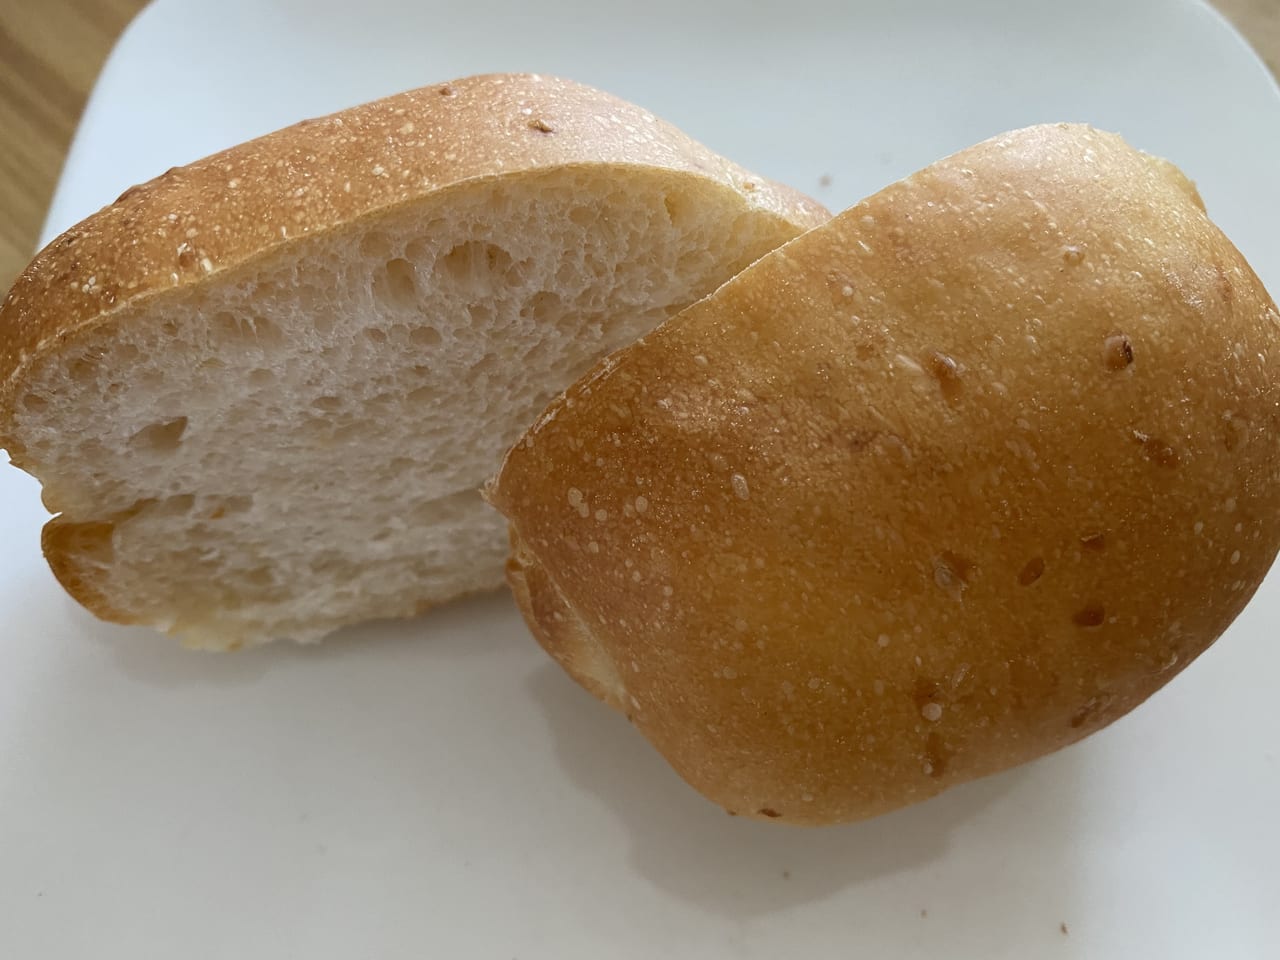 小平市 ごはんパンってなに るしえる のパンは小平産ブルーベリーから取った天然酵母を使い炊いた玄米を練りこんだ無添加で安心のパンでした 号外net 小平市